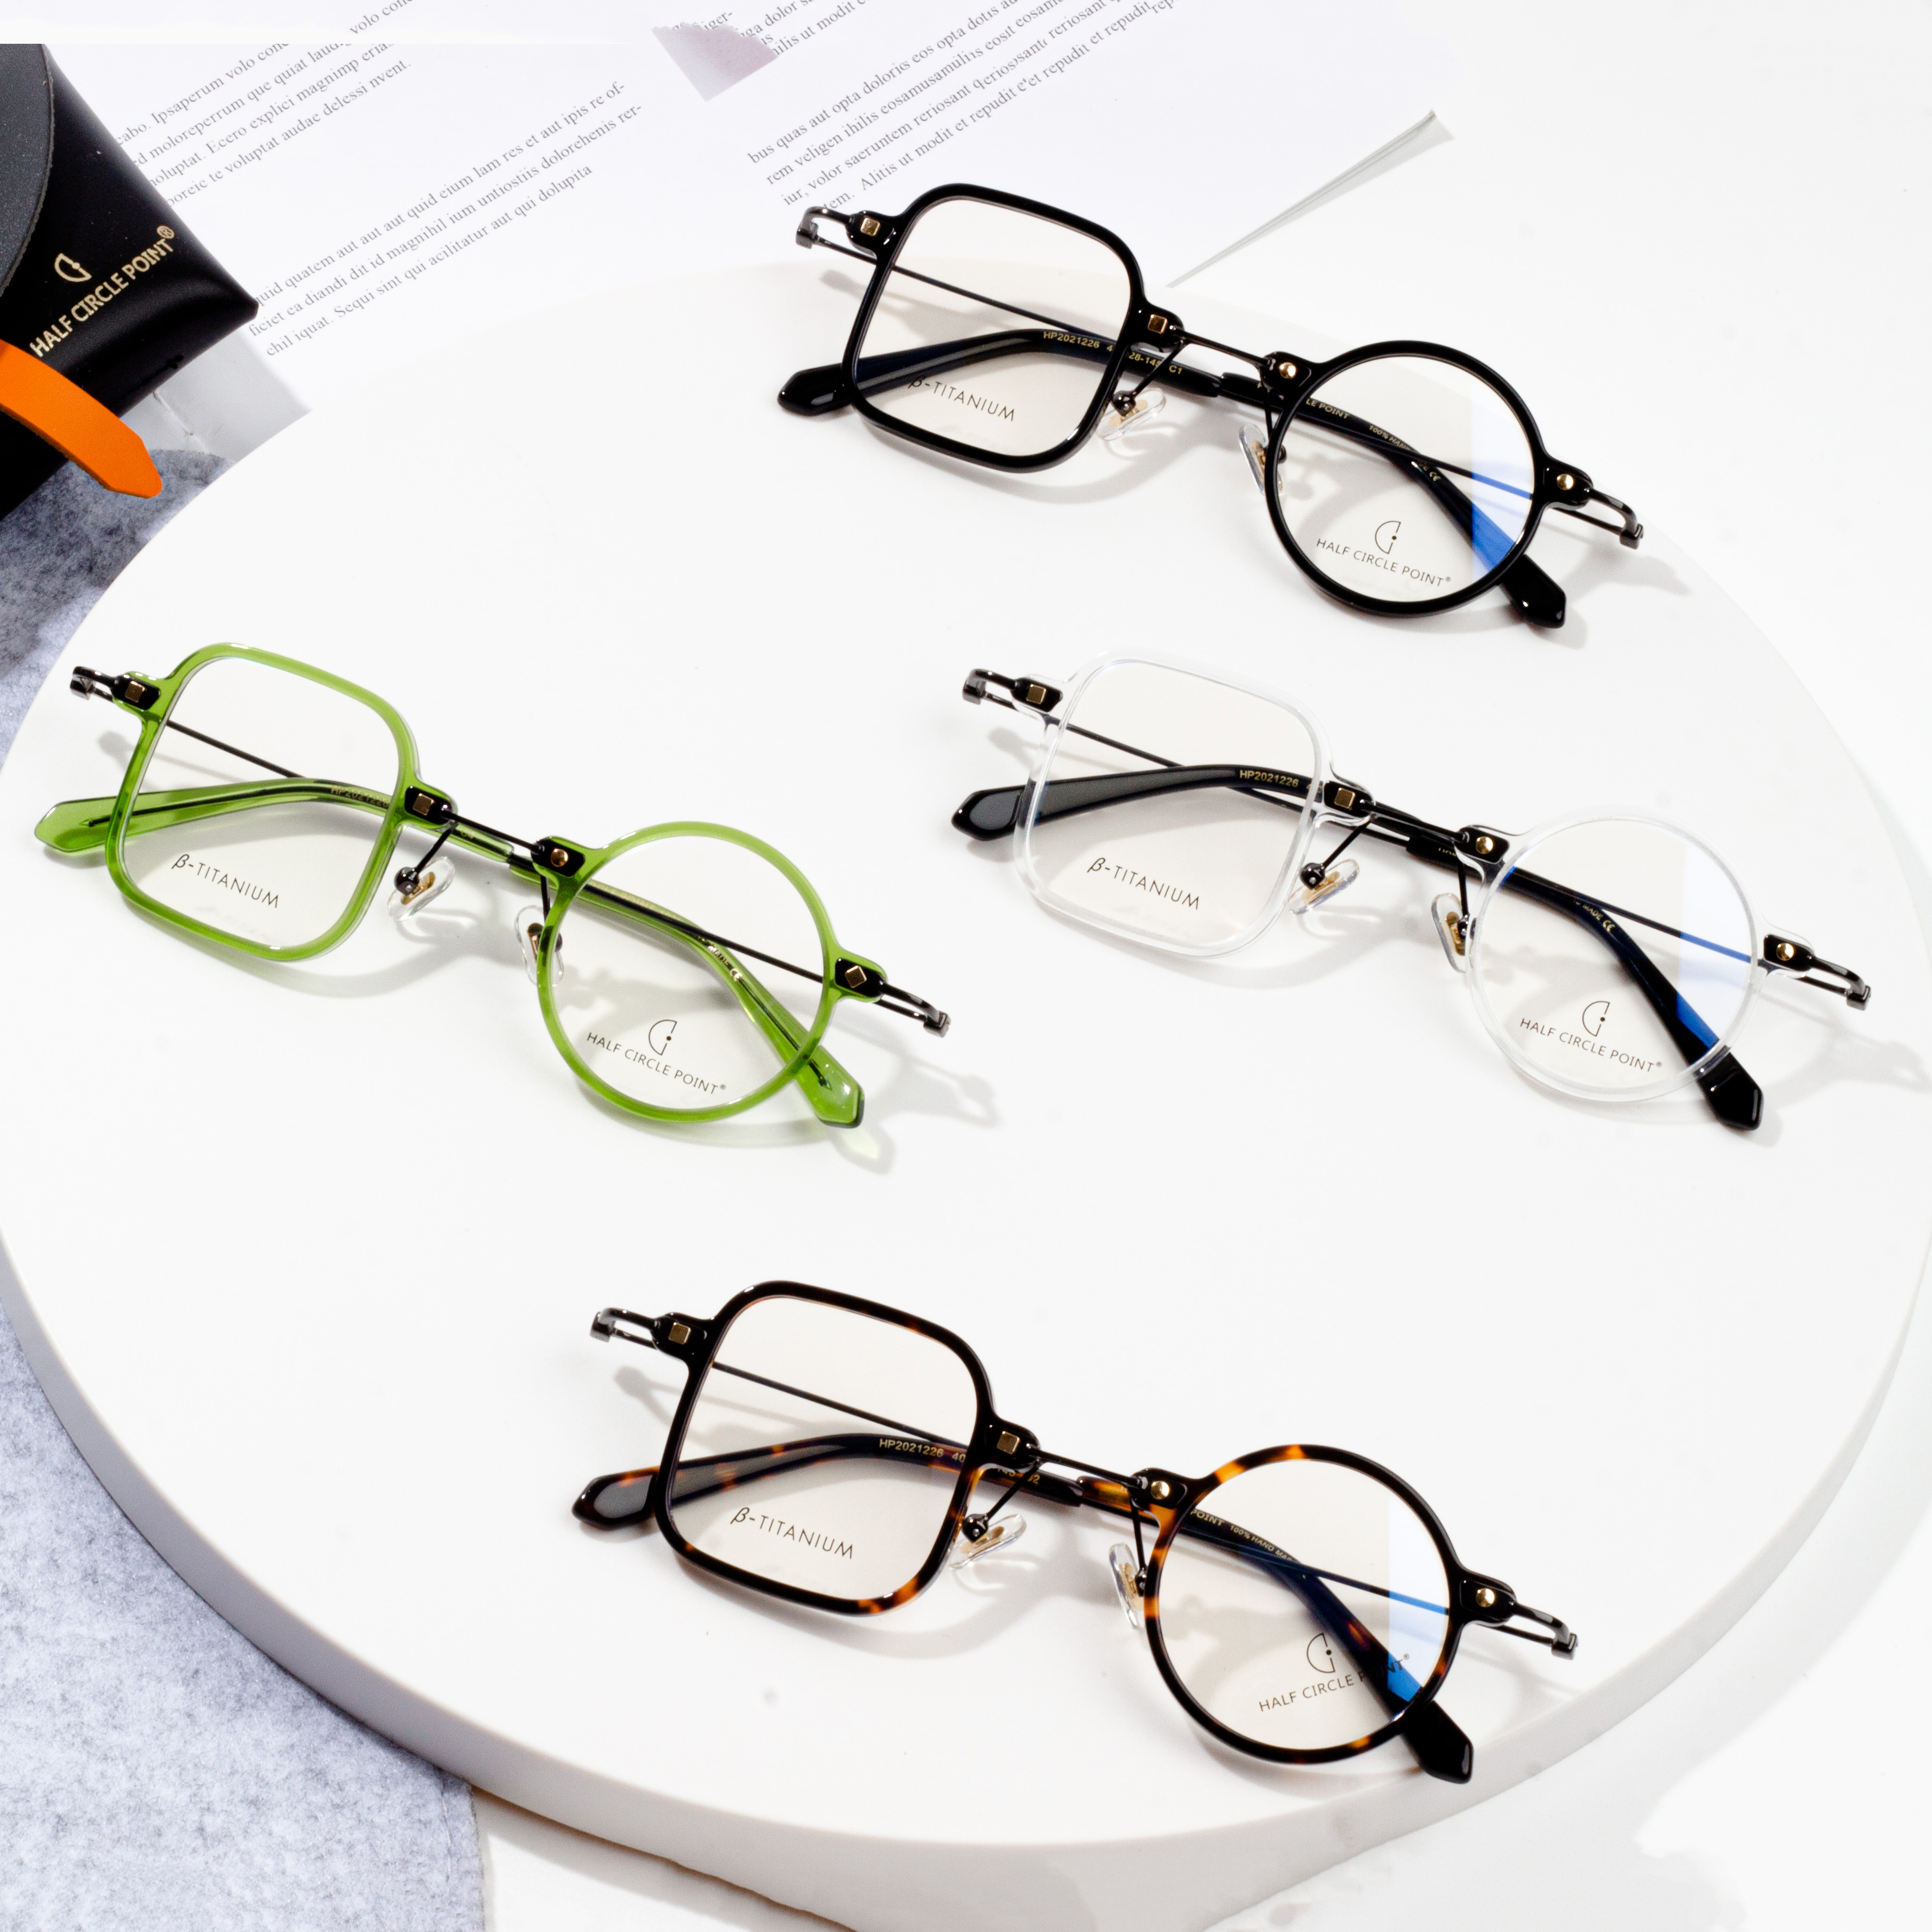 Unisex-Mode-Acetat-Brillengestelle